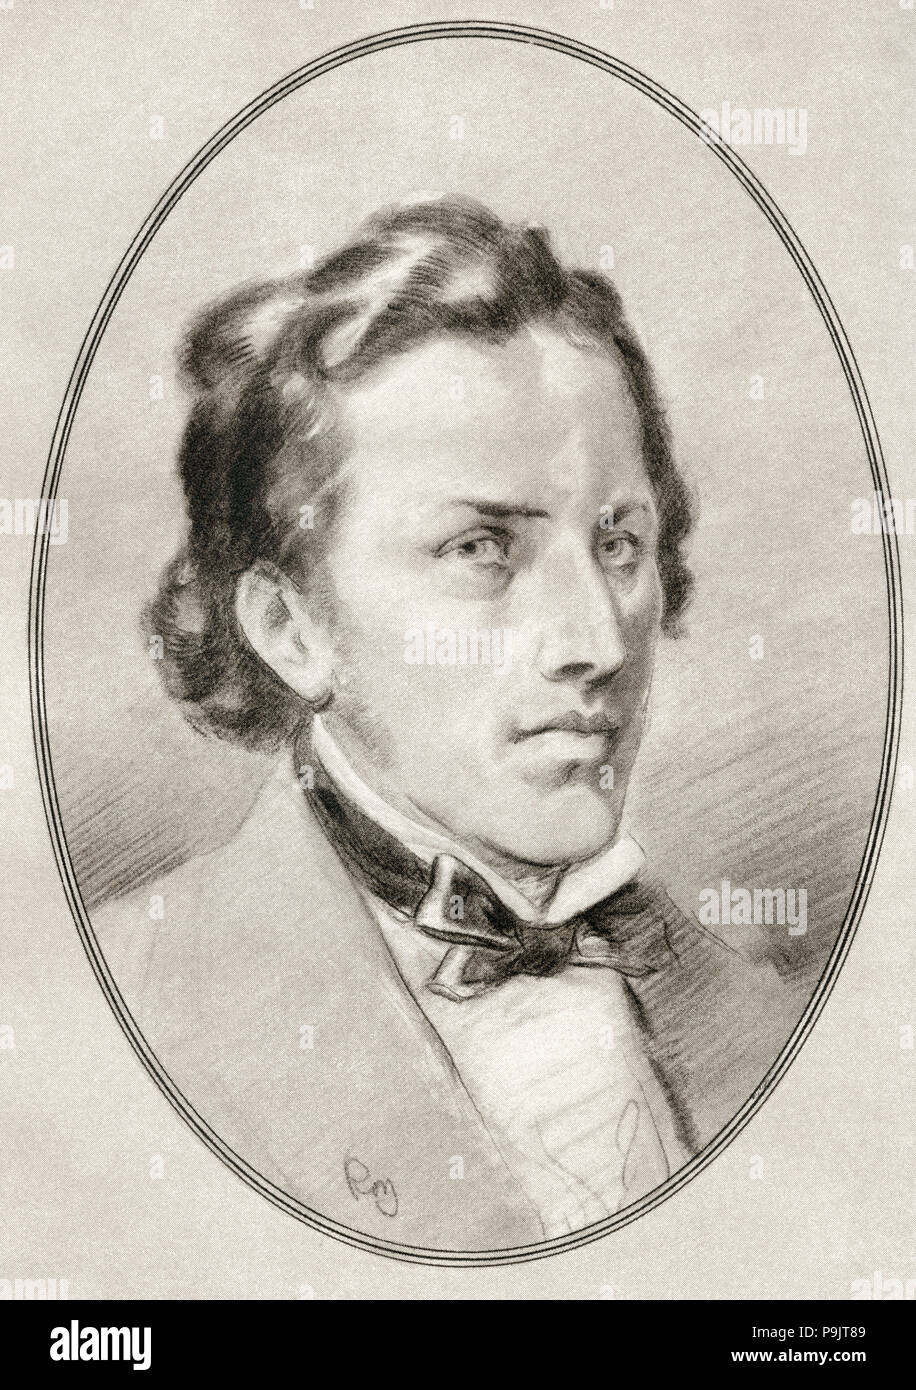 Frédéric François Chopin, 1810 - 1849. Der polnische Komponist und virtuoser Pianist der romantischen Epoche. Abbildung von Gordon Ross, US-amerikanischer Künstler und Illustrator (1873-1946), von lebenden Biographien der großen Komponisten. Stockfoto